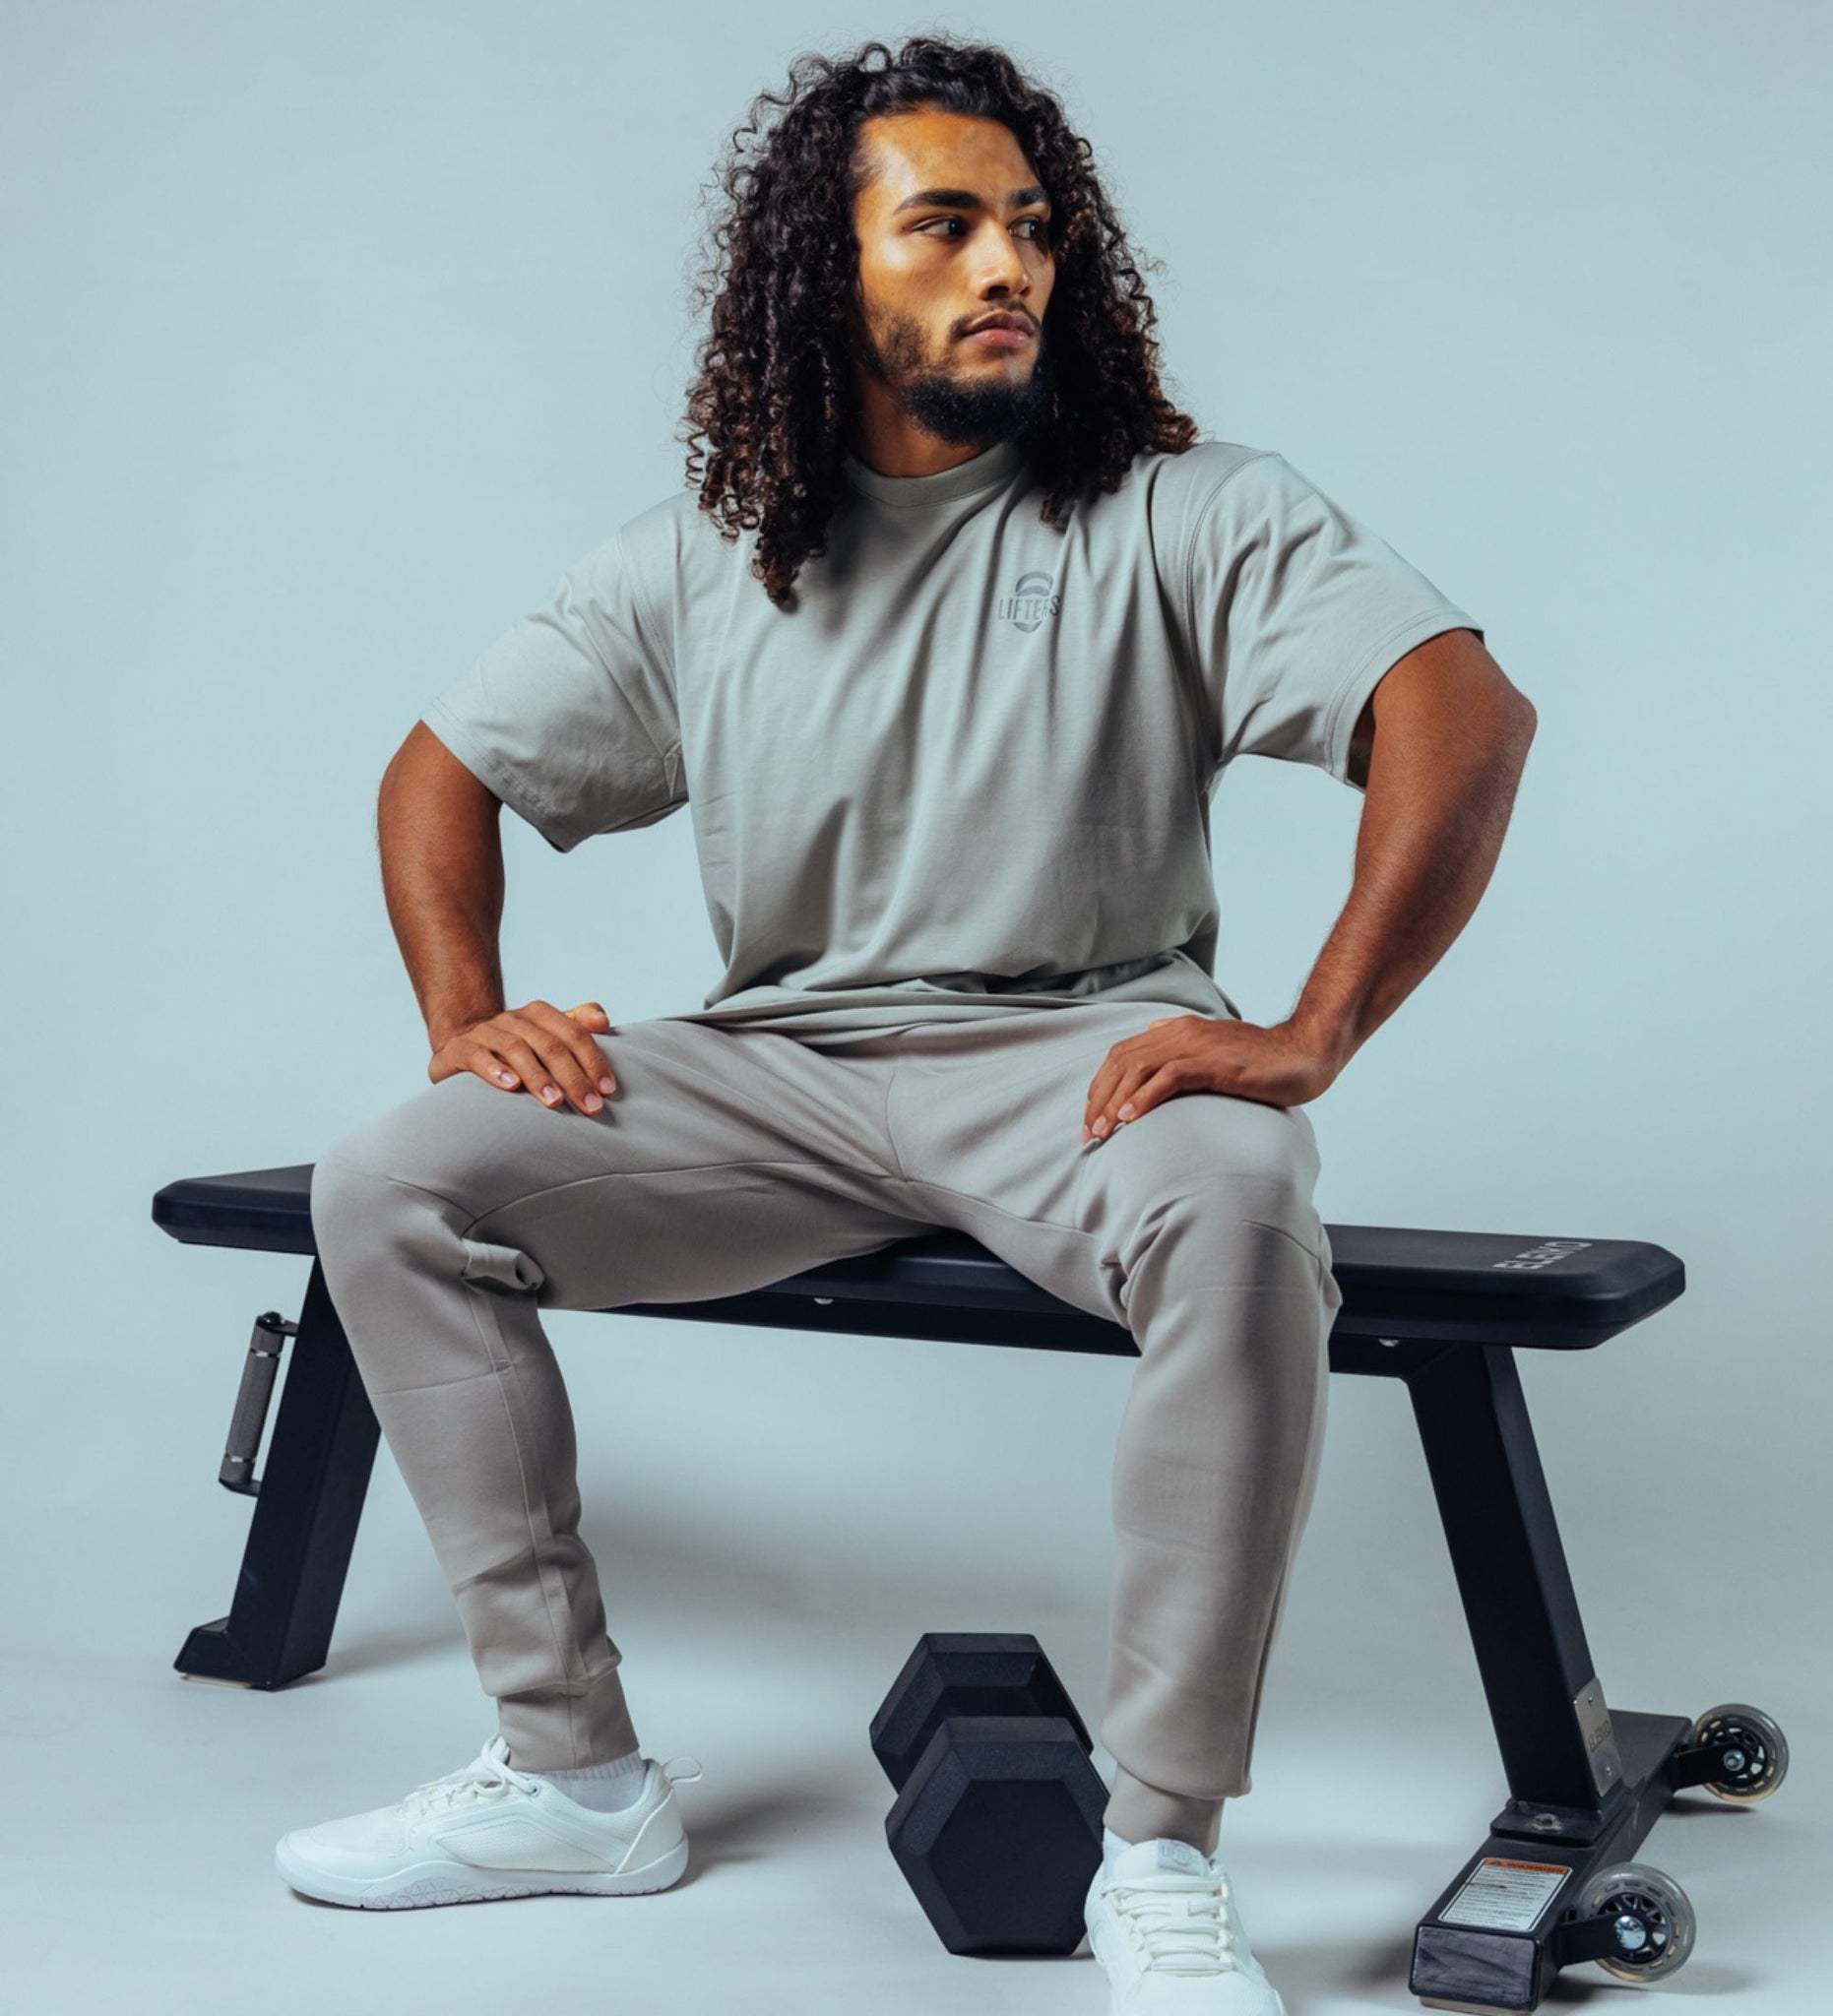 Mann sitzend auf Trainingsbank in Gym Kleidung von Lifters Wear, mit T-Shirt, Jogginghose und Barfußtrainingsschuhen, bereit für das Fitness-Training.